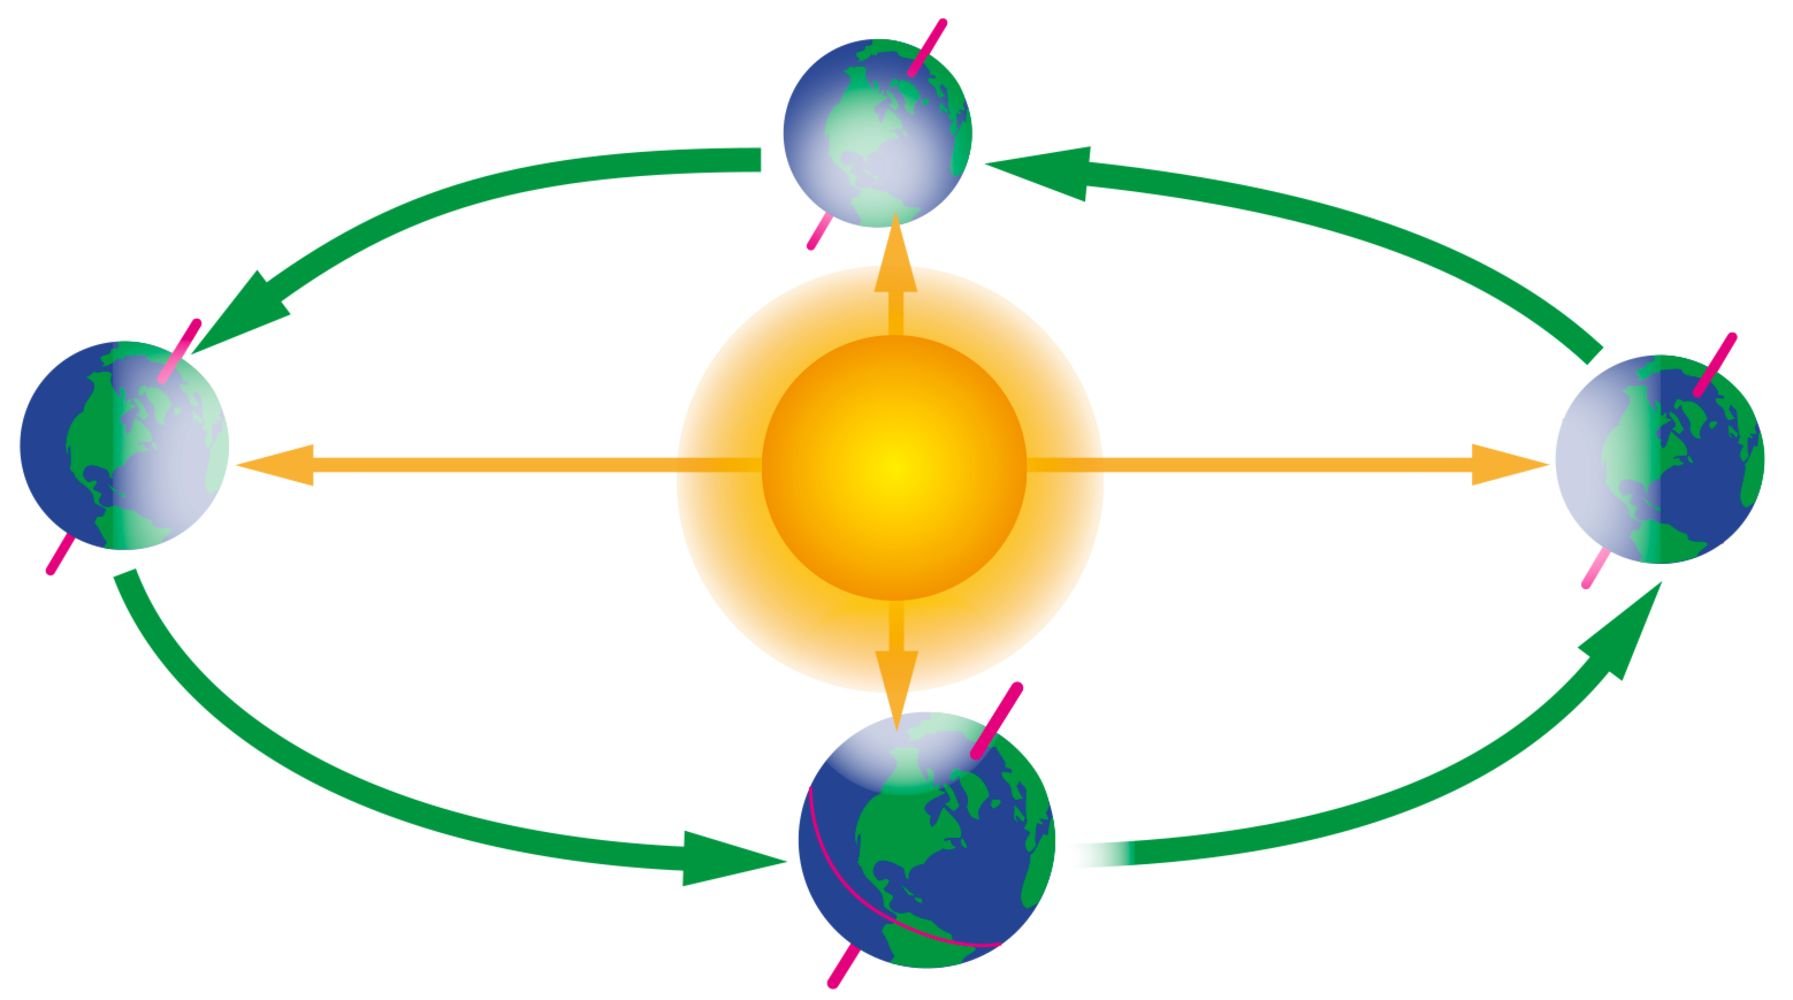 орбита земли вокруг солнца фото